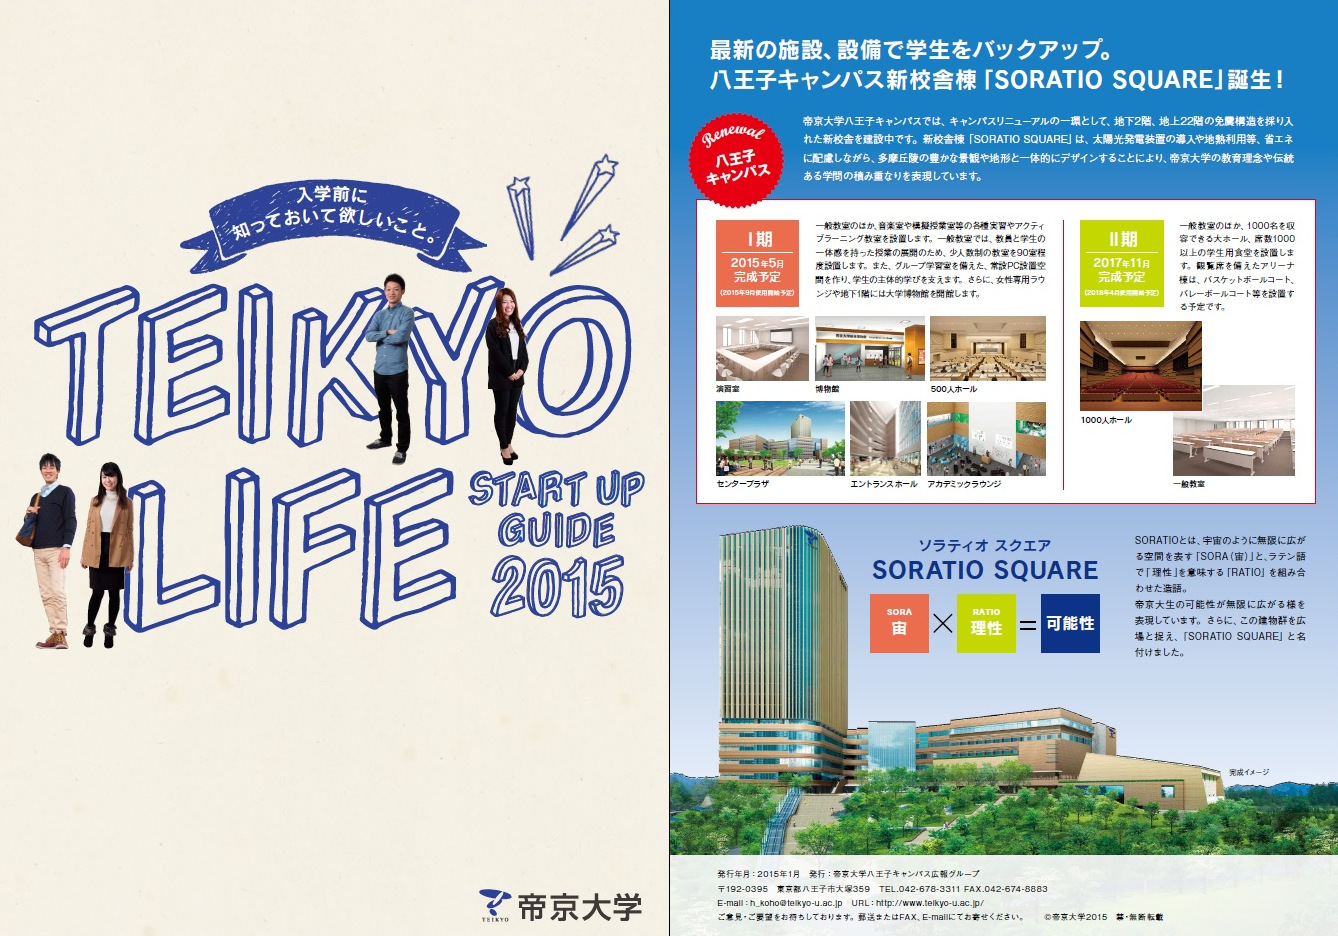 帝京大学八王子キャンパスが入学前準備号冊子「TEIKYO　LIFE　START UP GUIDE　2015」を発刊